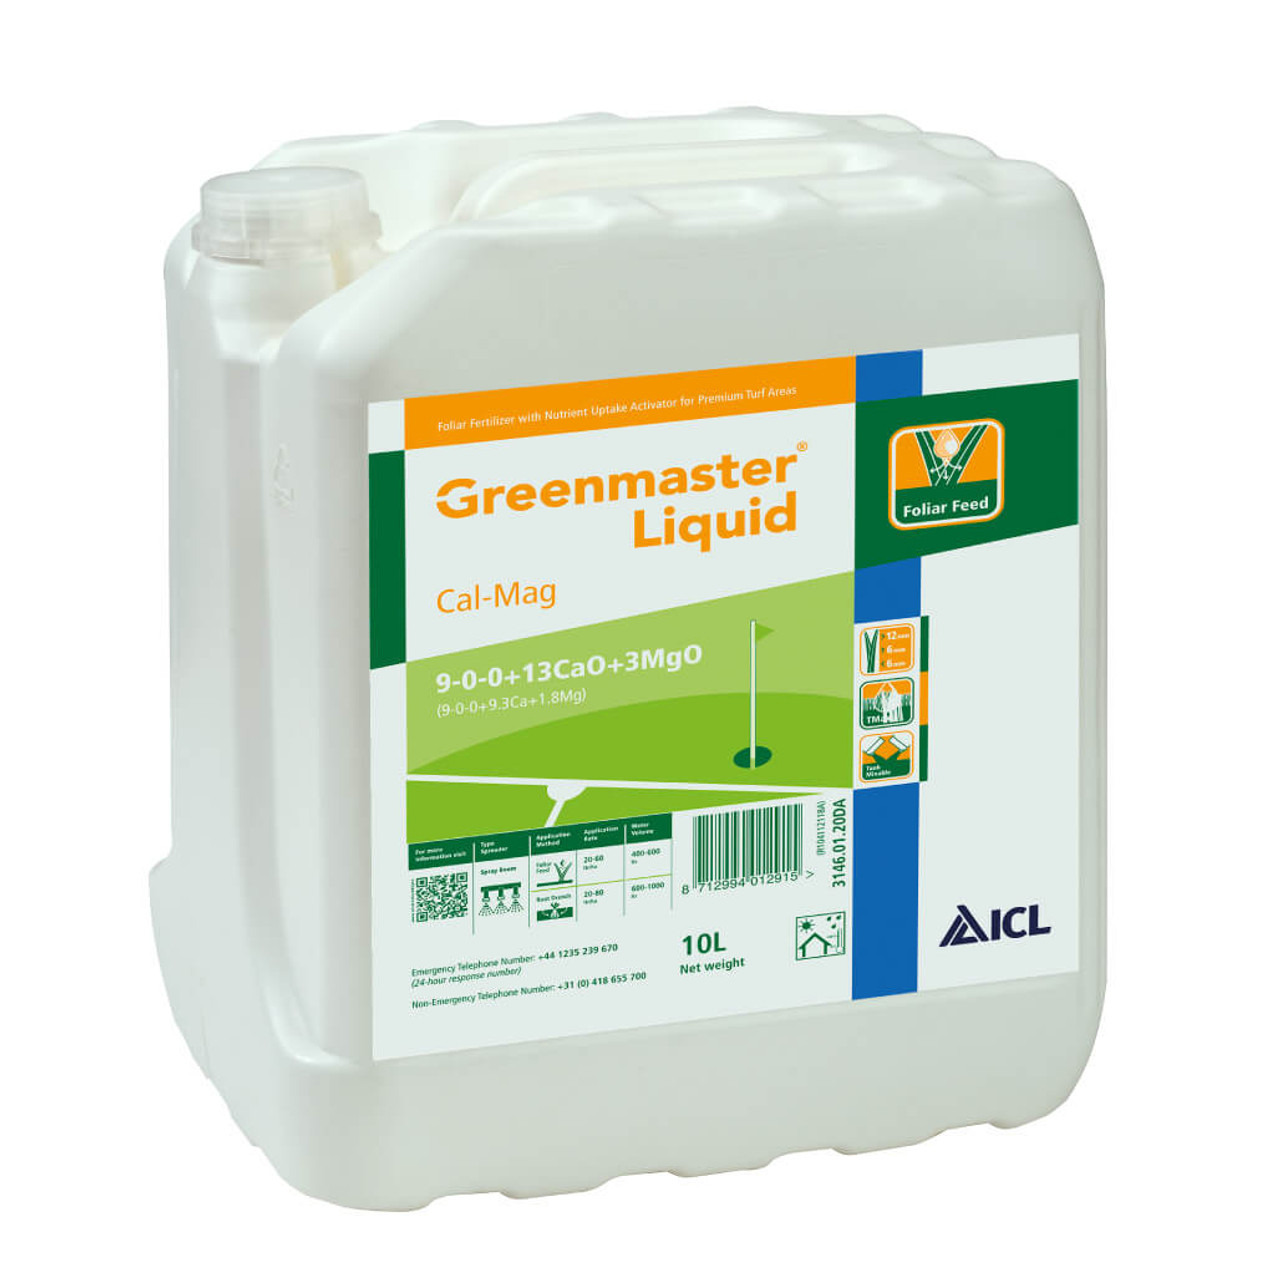 Greenmaster Liquid 9-0-0+13CaO+3MgO 10l Cal-Mag